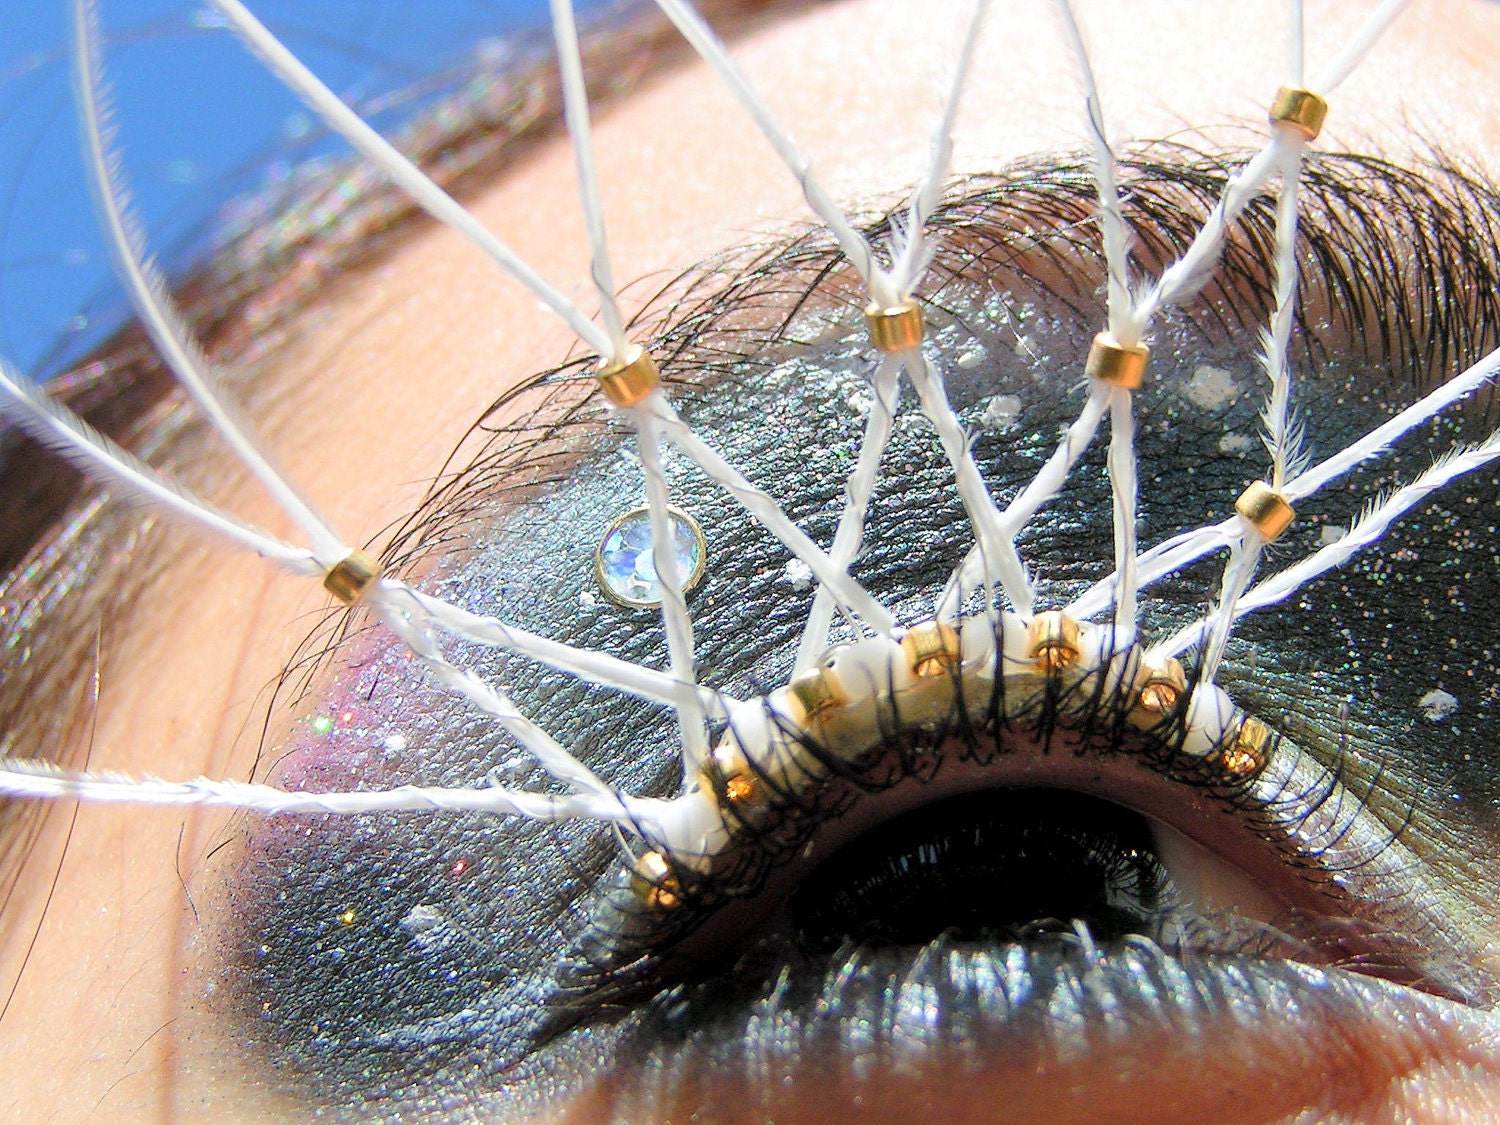 Feather Eyelash Jewelry - albino peacock spider webs with 24k gold plated beads, false eyelashes - EyelashJewelry